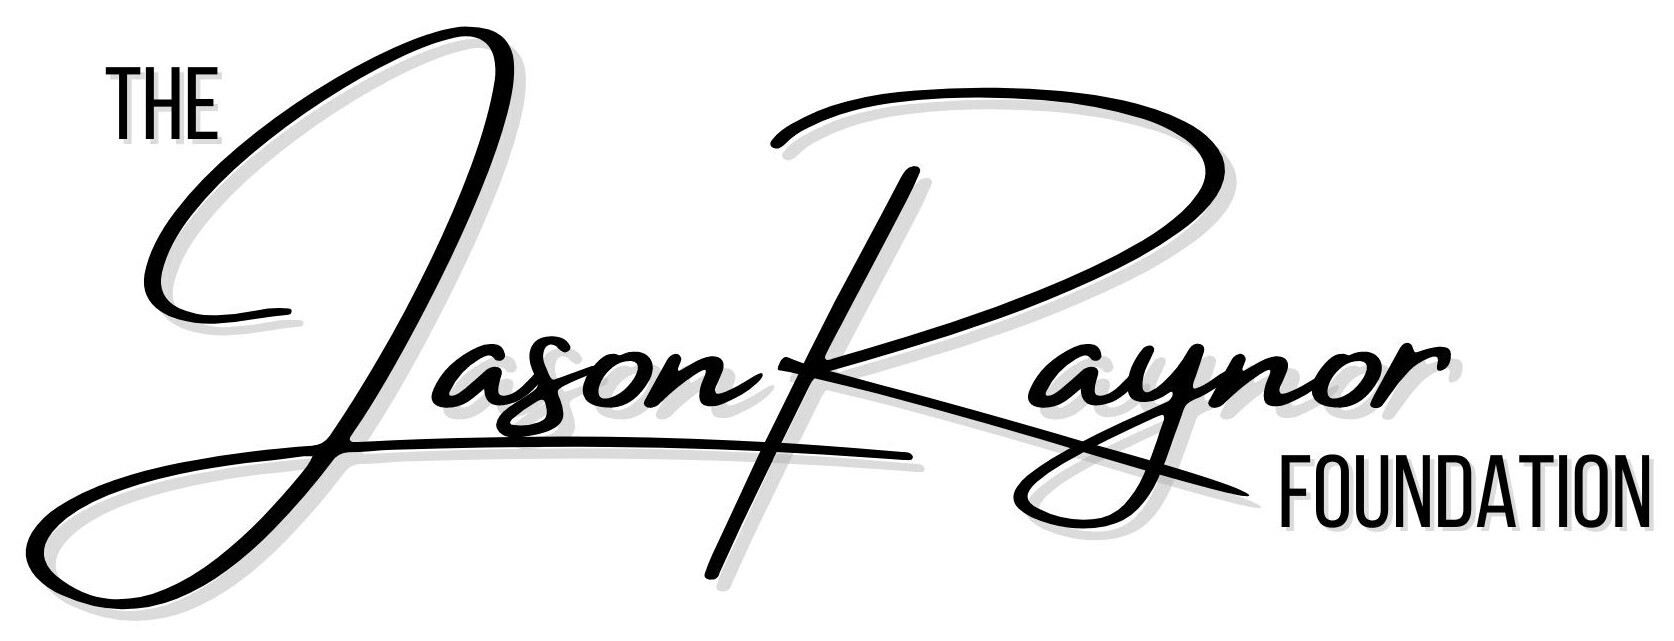 The Jason Raynor Foundation